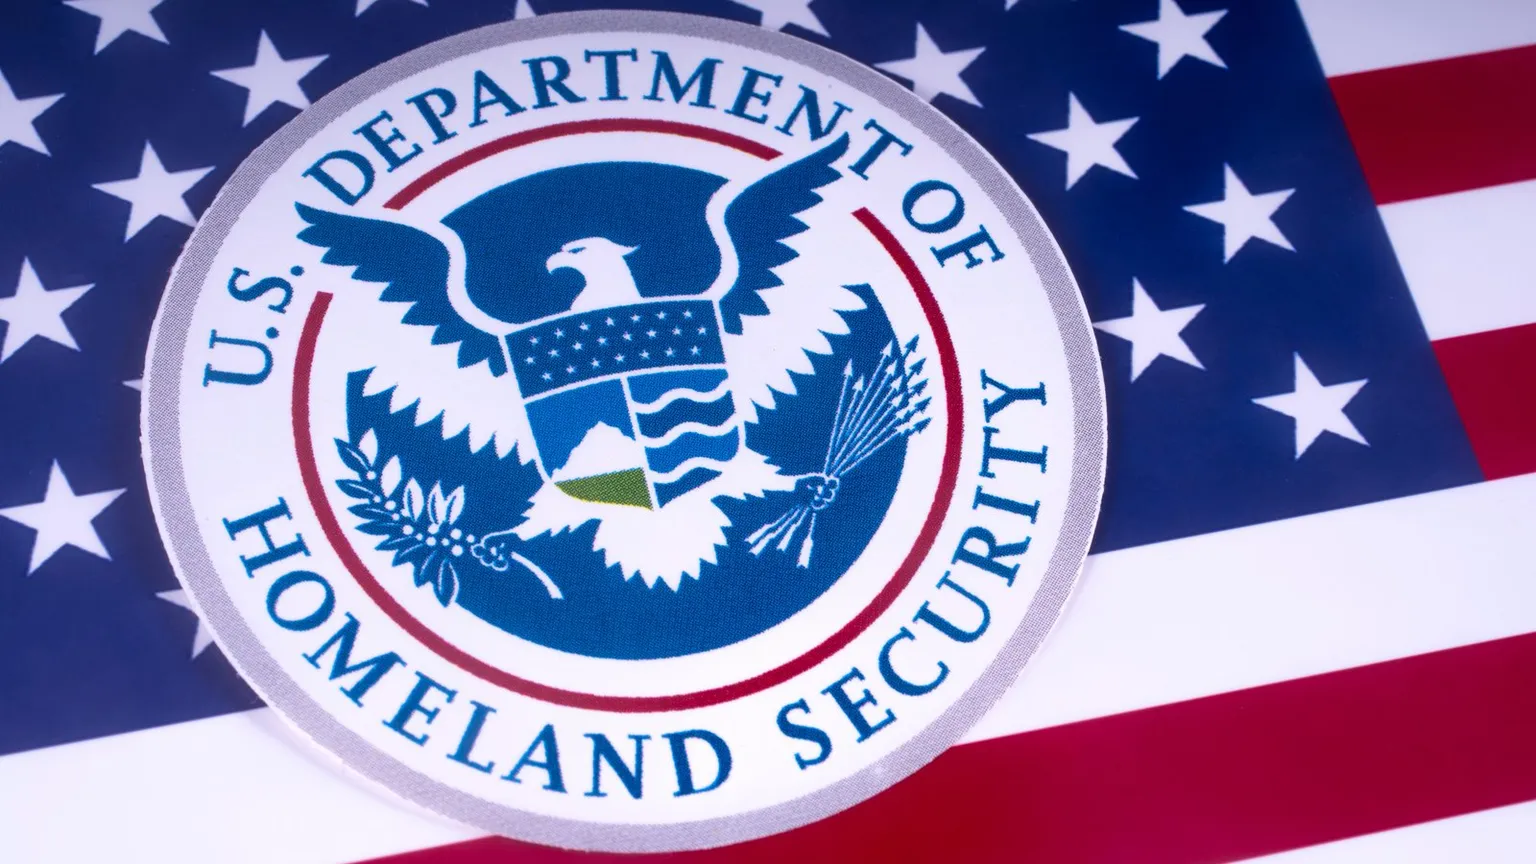 El Departamento de Seguridad Nacional de los Estados Unidos. Imagen: Shutterstock